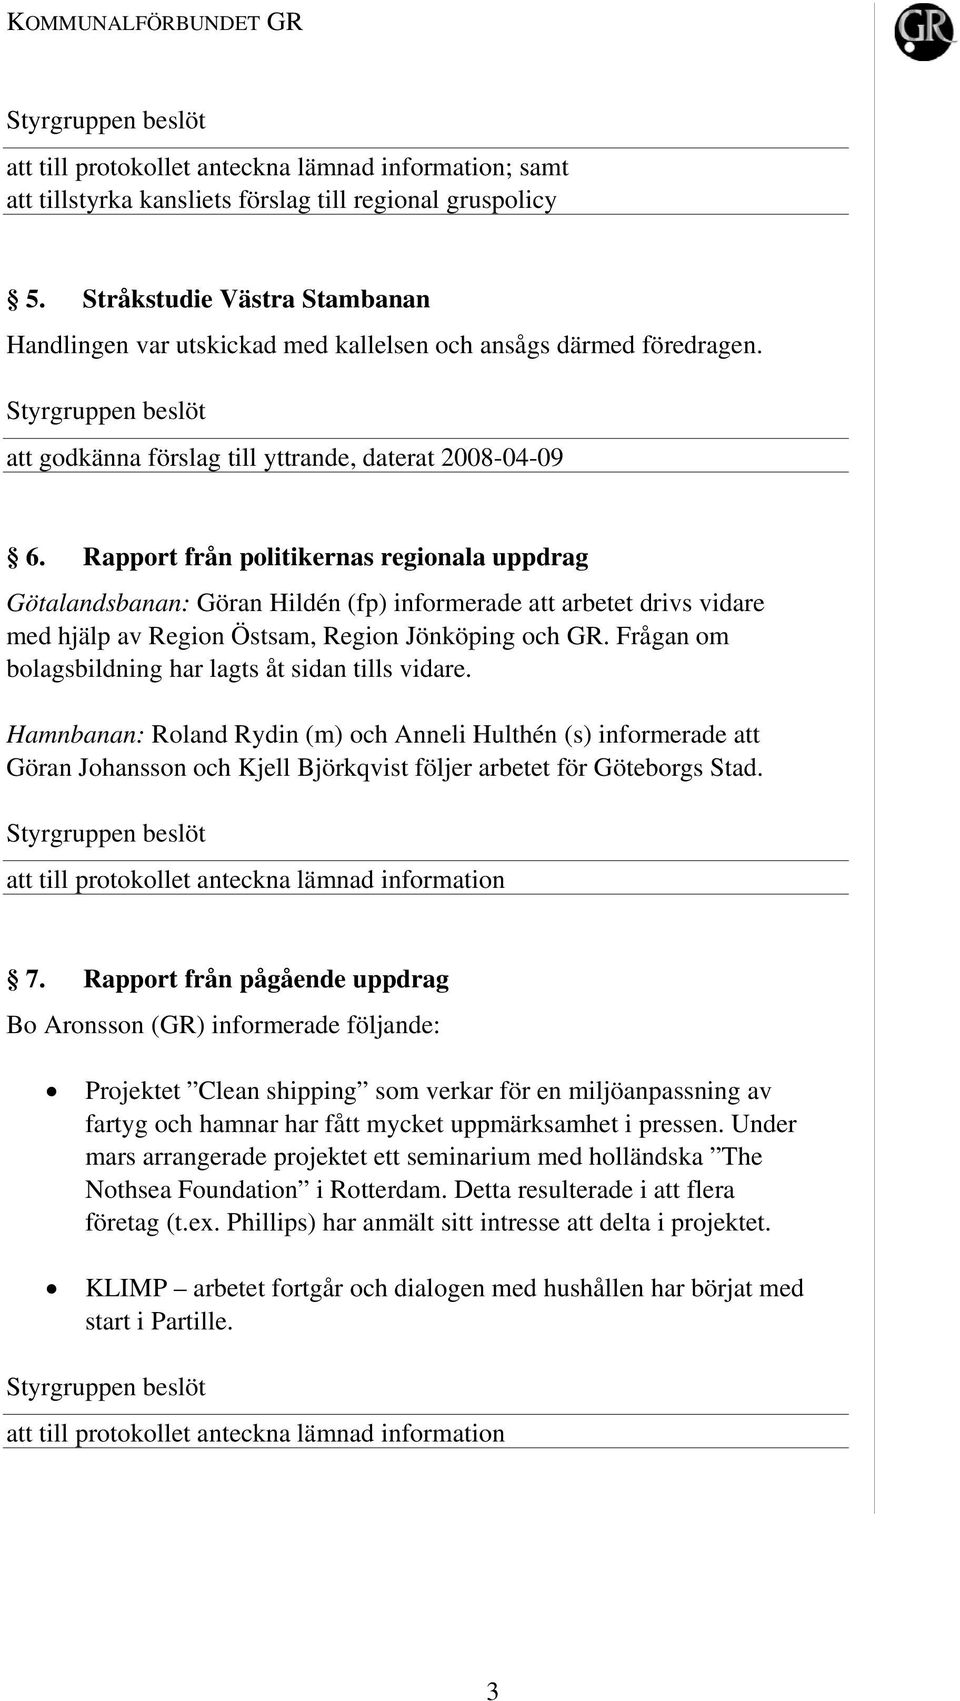 Rapport från politikernas regionala uppdrag Götalandsbanan: Göran Hildén (fp) informerade att arbetet drivs vidare med hjälp av Region Östsam, Region Jönköping och GR.